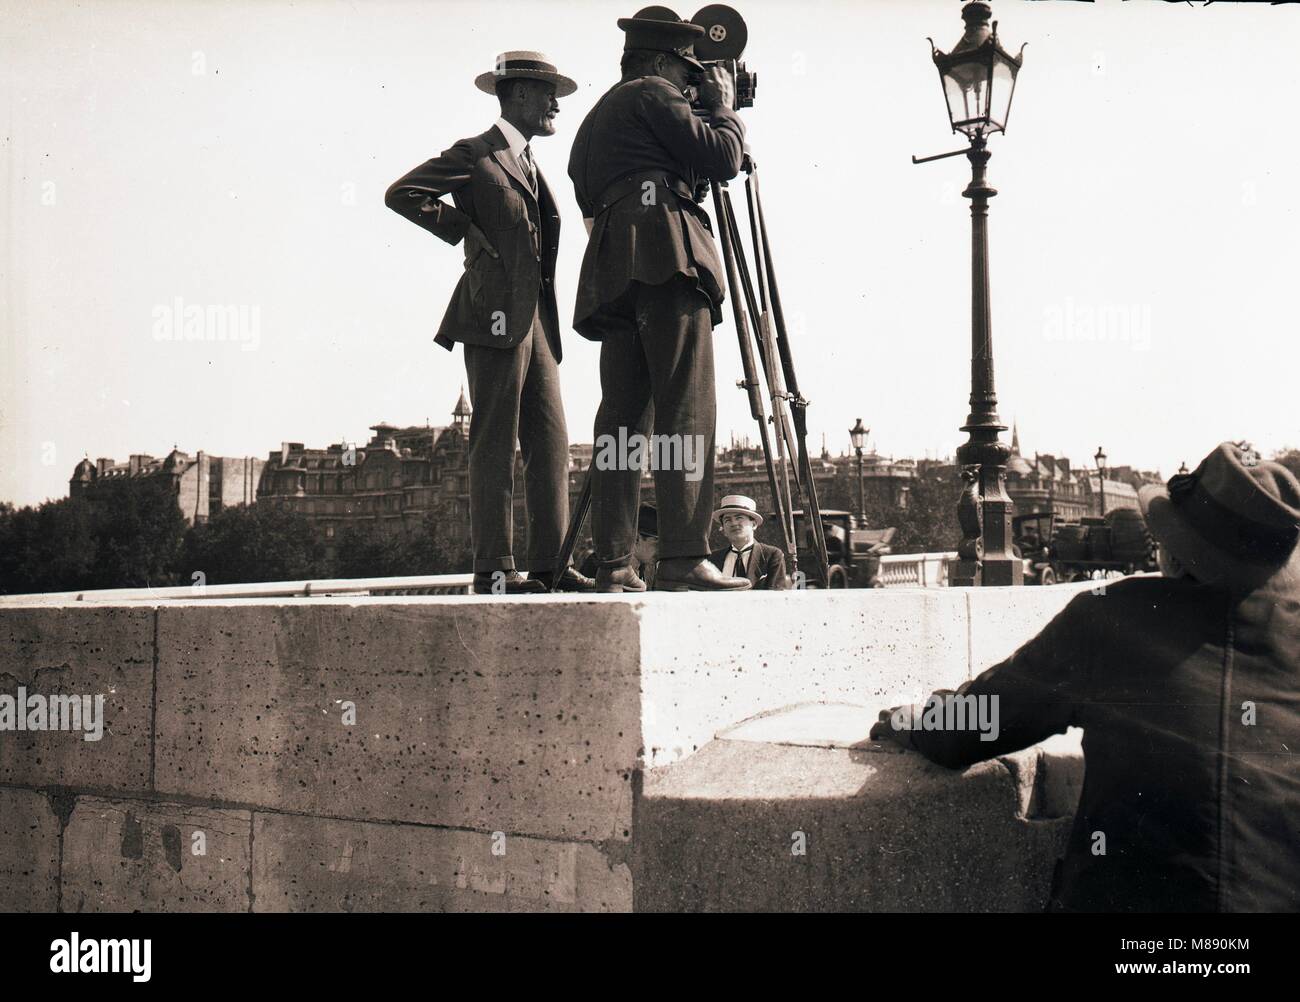 Burton Holmes avec Cameraman, Paris, France, 1918 Banque D'Images